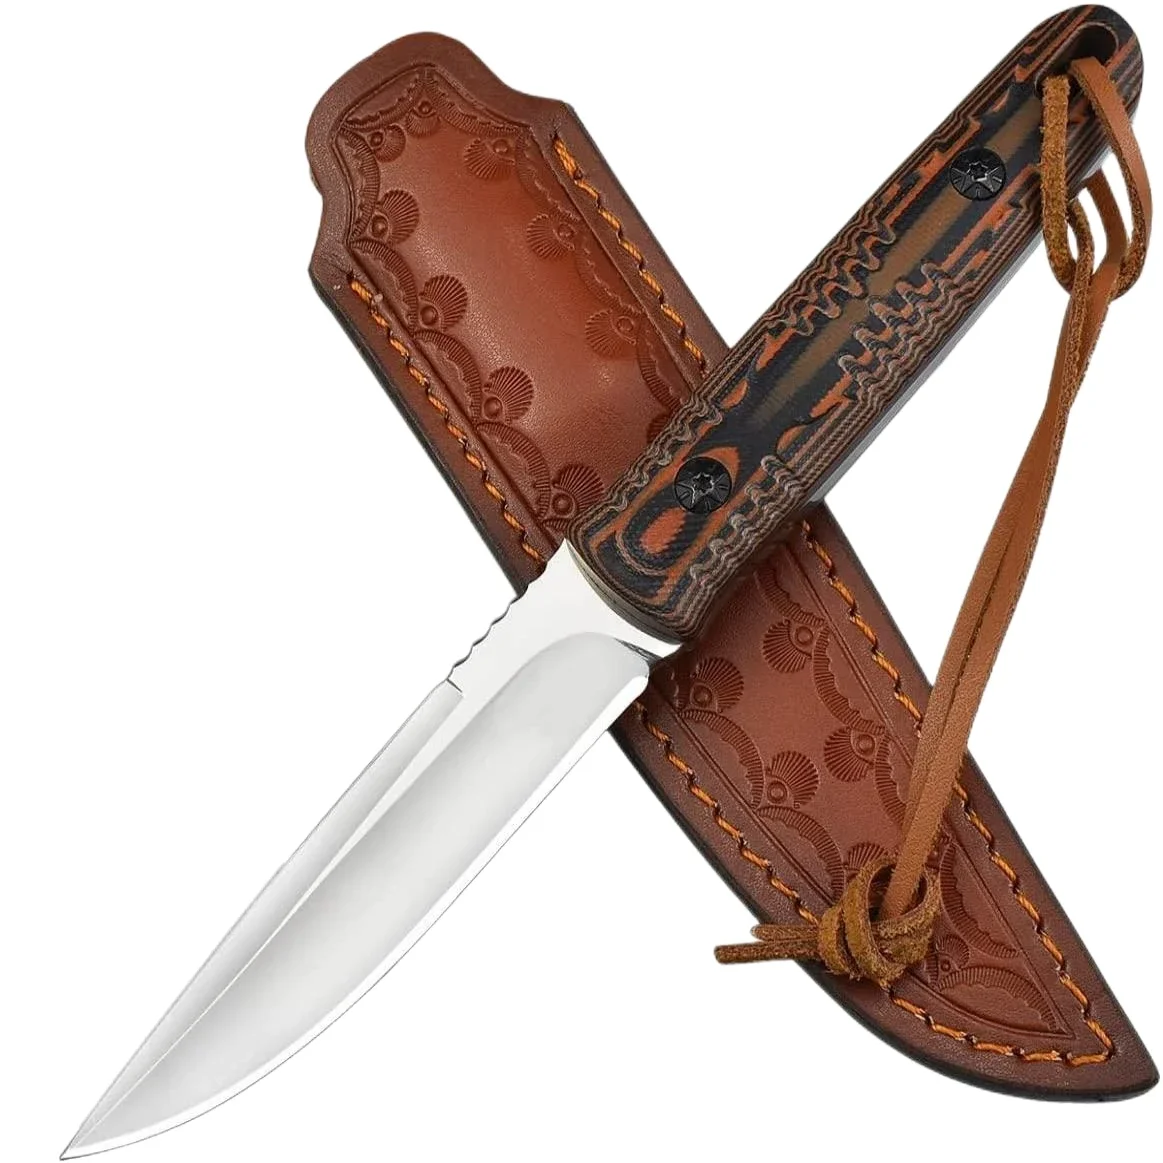 

Охотничий нож Topwell ручной работы с фиксированным лезвием D2 и рукояткой G10, с кожаным футляром, для мужчин, для выживания, кемпинга, пешего туризма